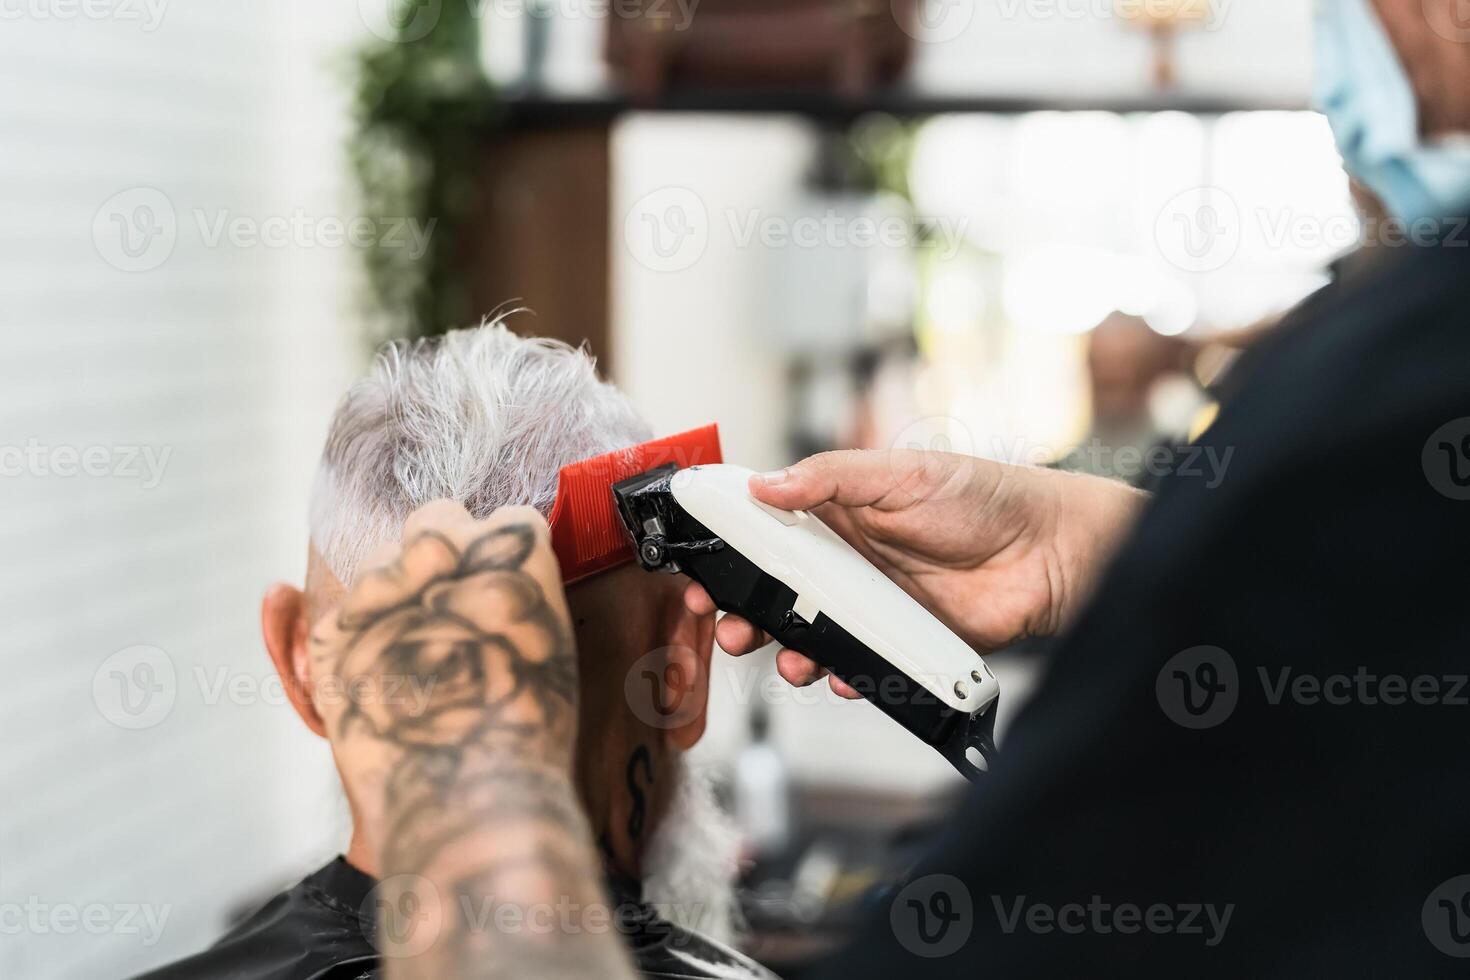 Masculin coiffeur Coupe cheveux à barbe Sénior client tandis que portant visage chirurgical masque - Jeune coiffeur travail dans salon de coiffure pendant couronne virus déclenchement photo